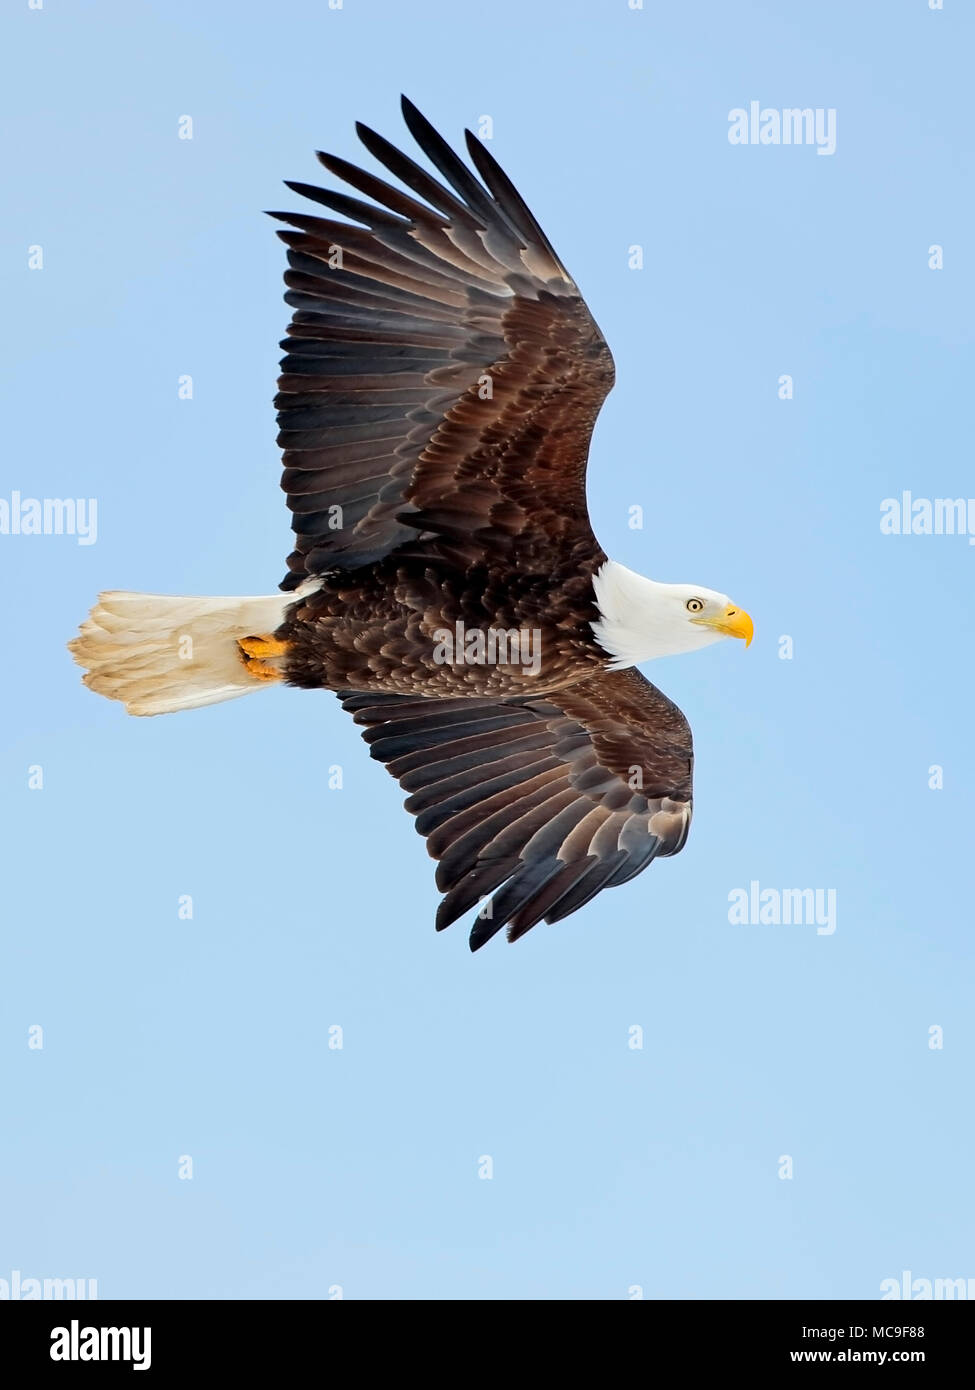 Weißkopfadler im Flug Segelfliegen in blauer Himmel. Stockfoto